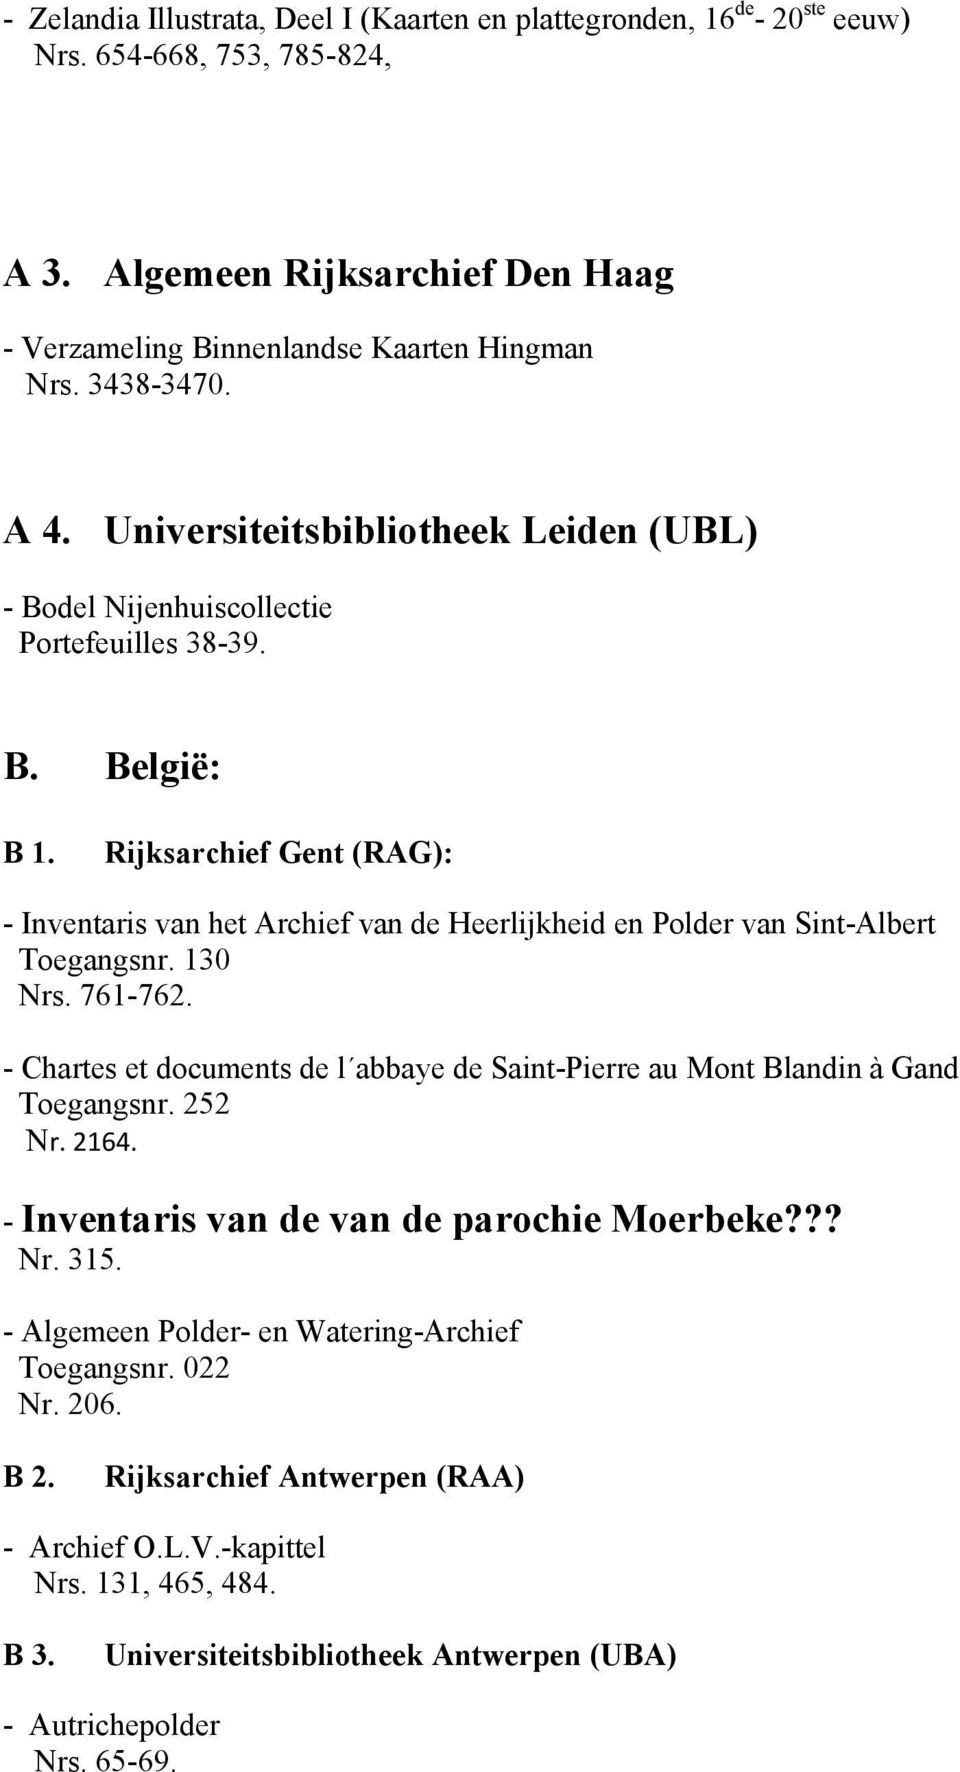 Rijksarchief Gent (RAG): - Inventaris van het Archief van de Heerlijkheid en Polder van Sint-Albert Toegangsnr. 130 Nrs. 761-762.